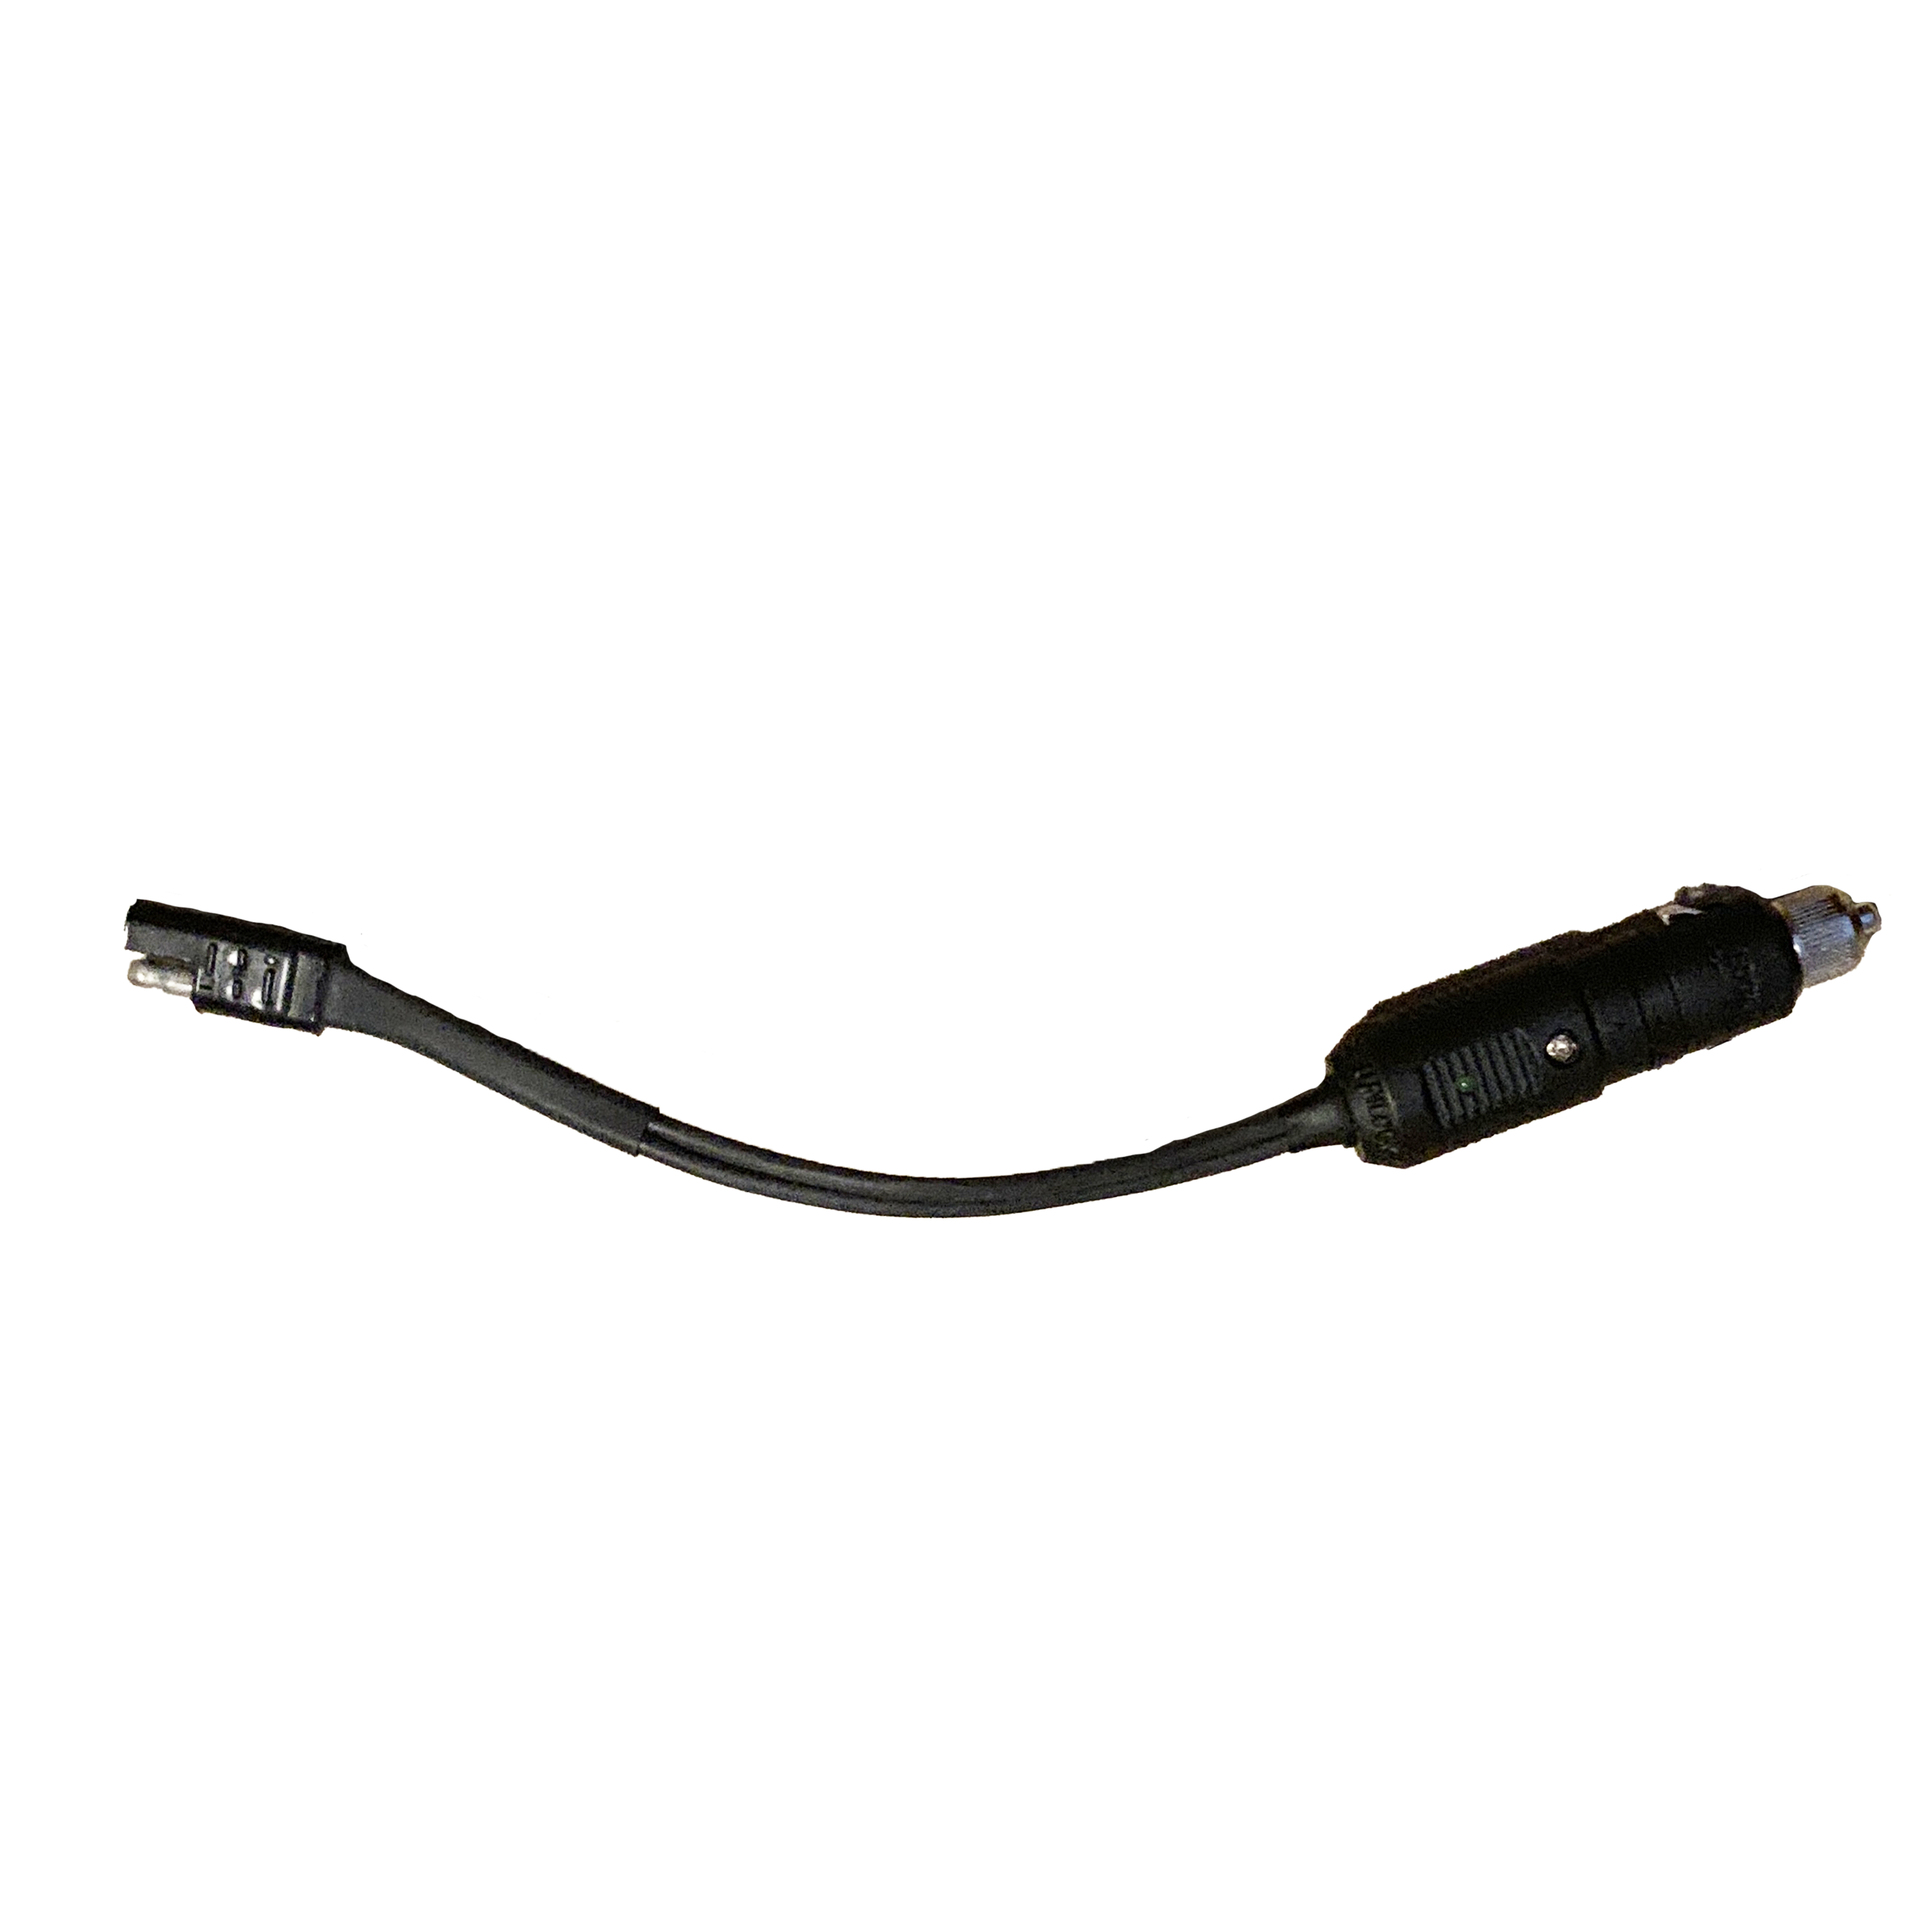 12v Cigarette Plug Adapter Power Cord for LED Fishing Lights – Underwater  Fish Light